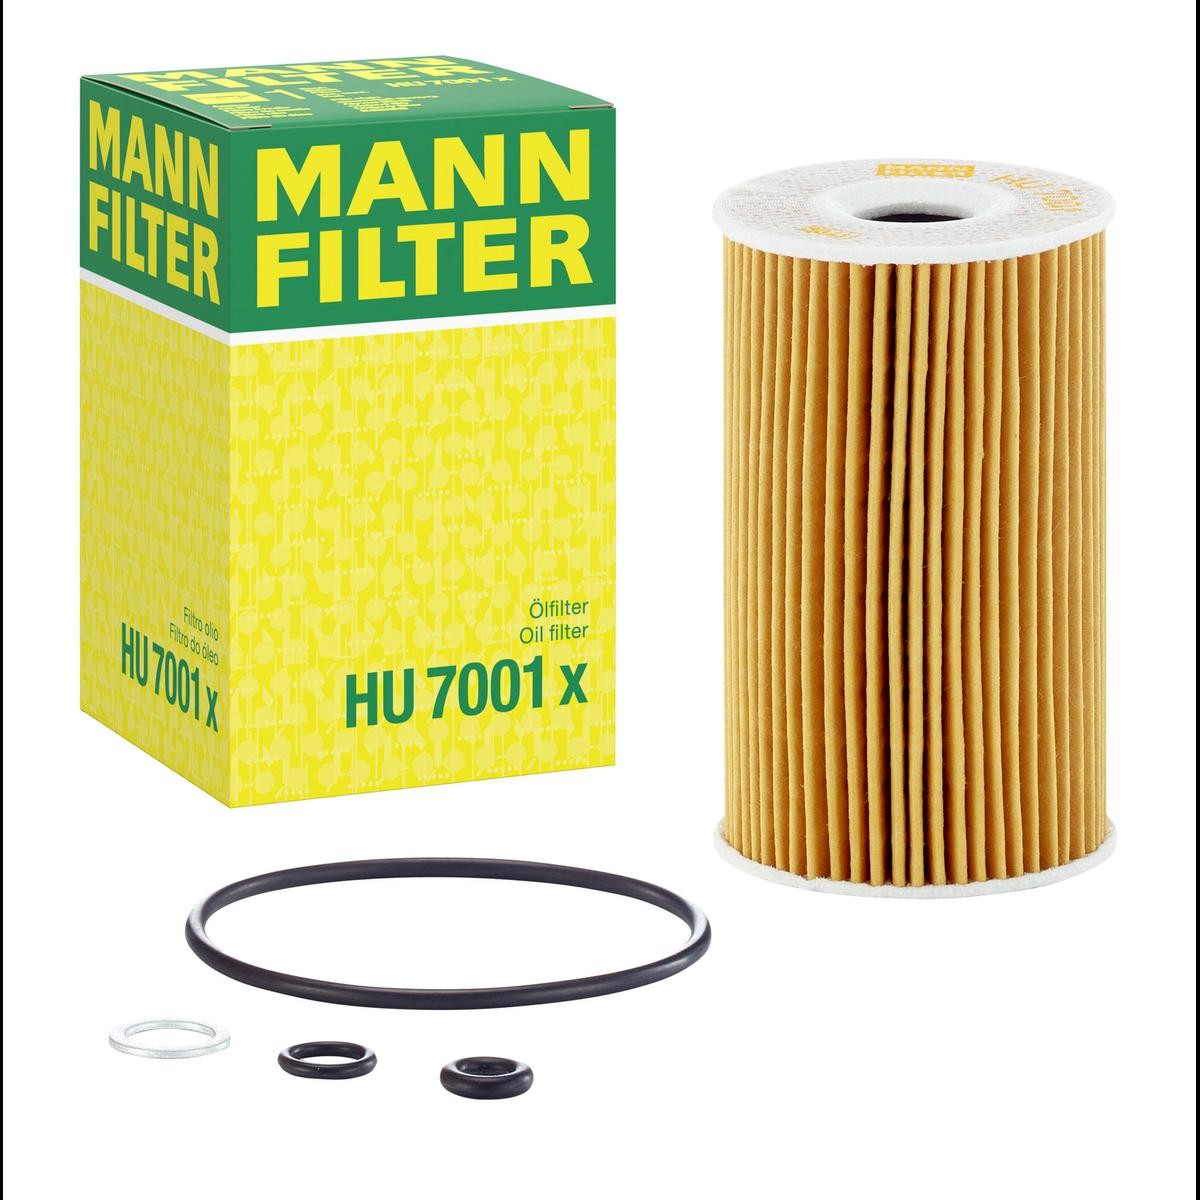 MANN-FILTER Oil filter HU 7001 x